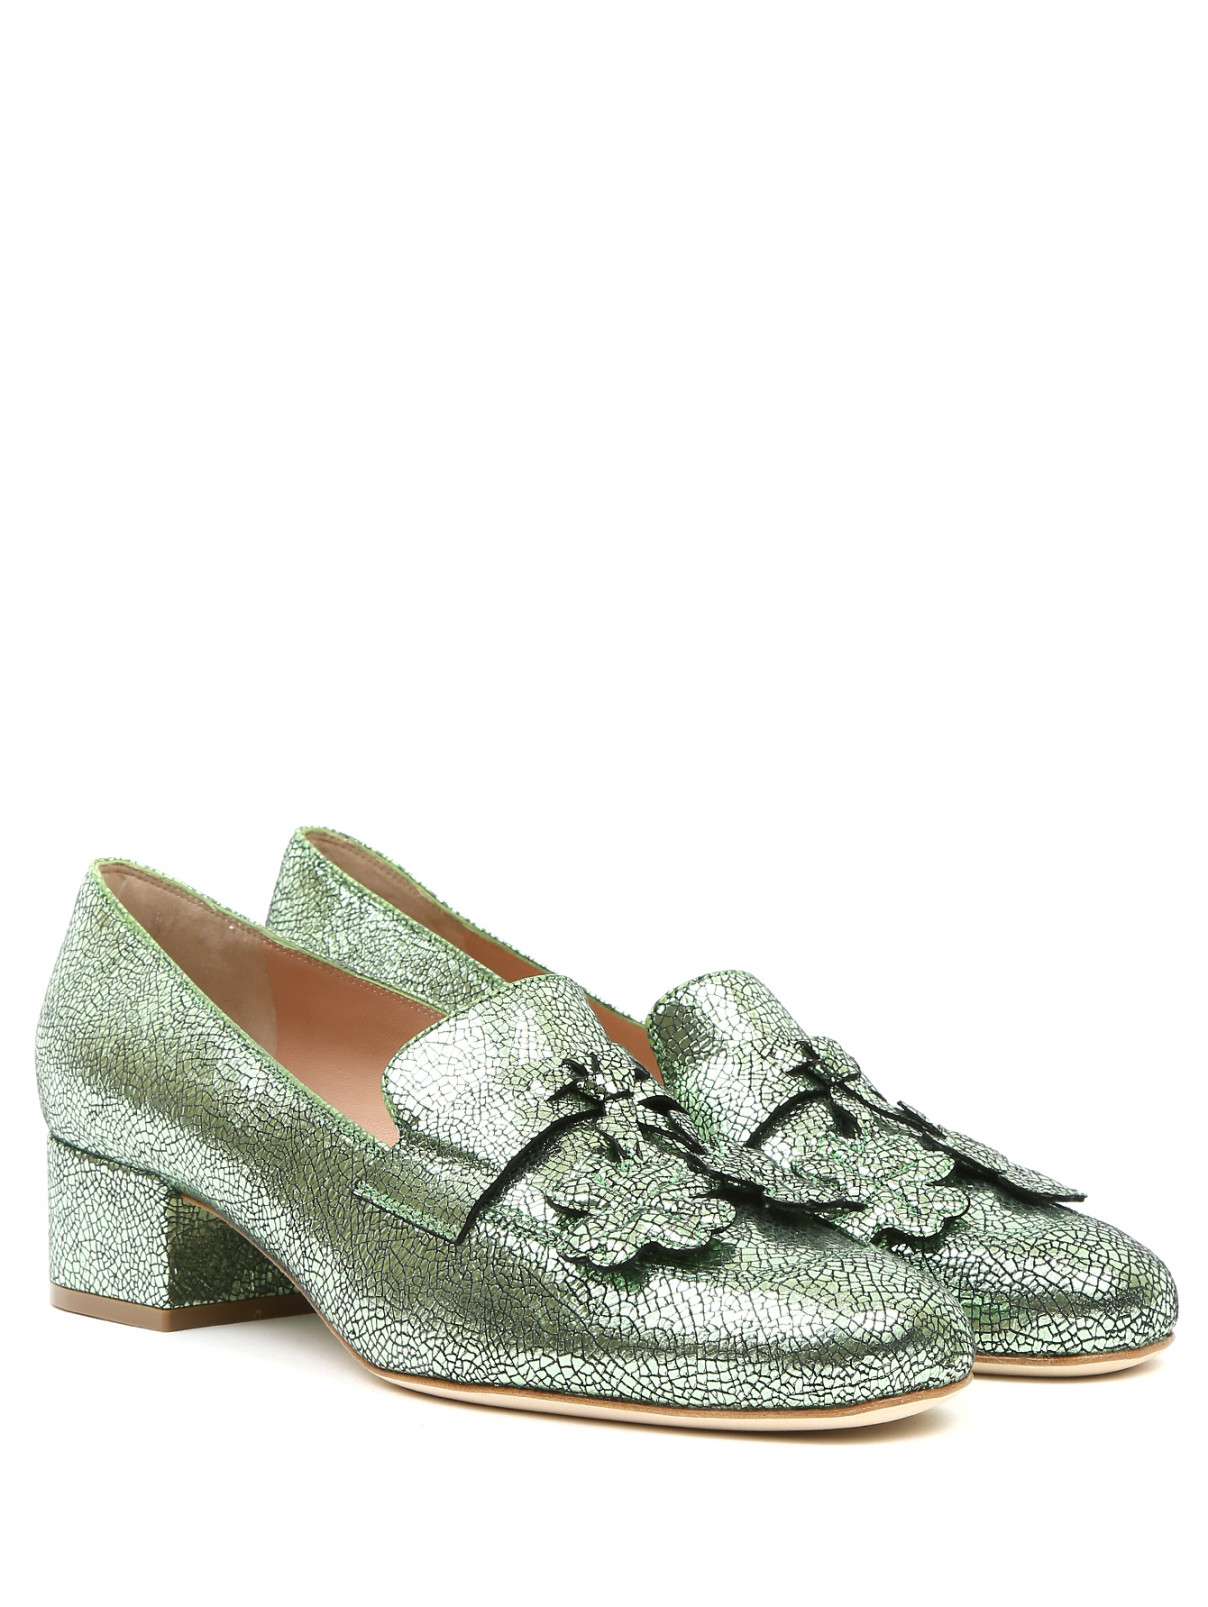 Туфли из фактурной кожи на низком каблуке Alberta Ferretti  –  Общий вид  – Цвет:  Зеленый